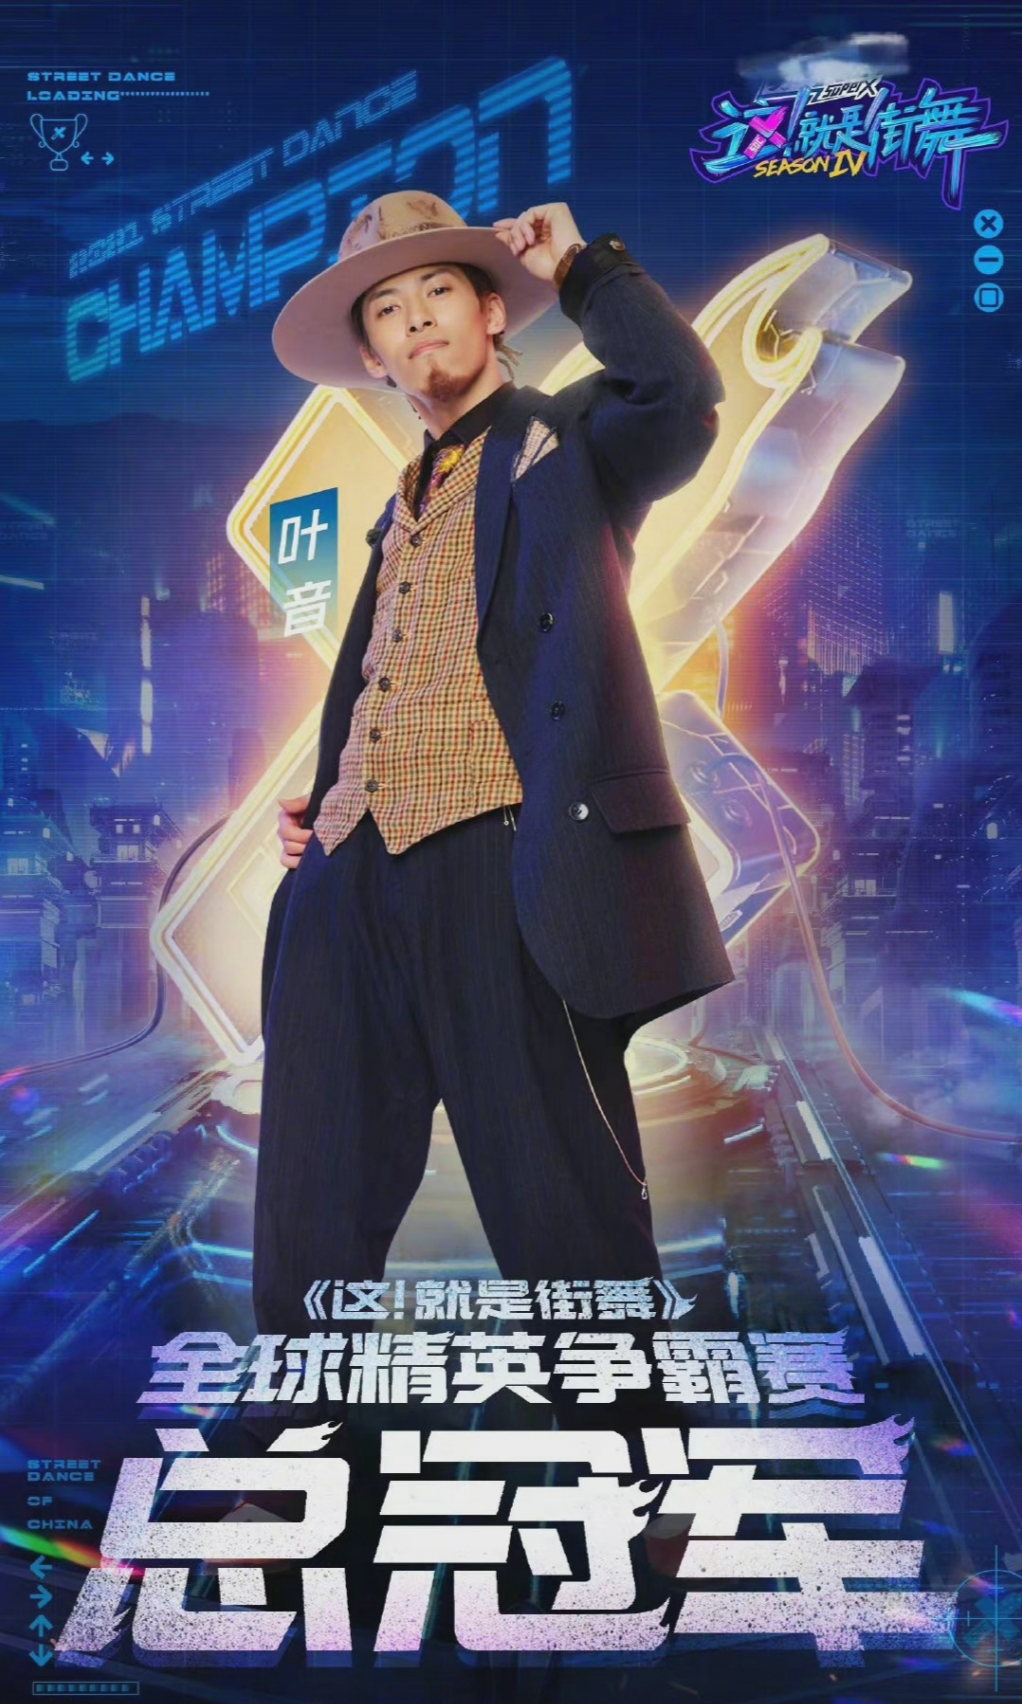 'Street Dance of China' mùa 4 kết thúc: Vương Nhất Bác 2 lần liên tiếp thành công dẫn đội tiến đến ngôi vị quán quân